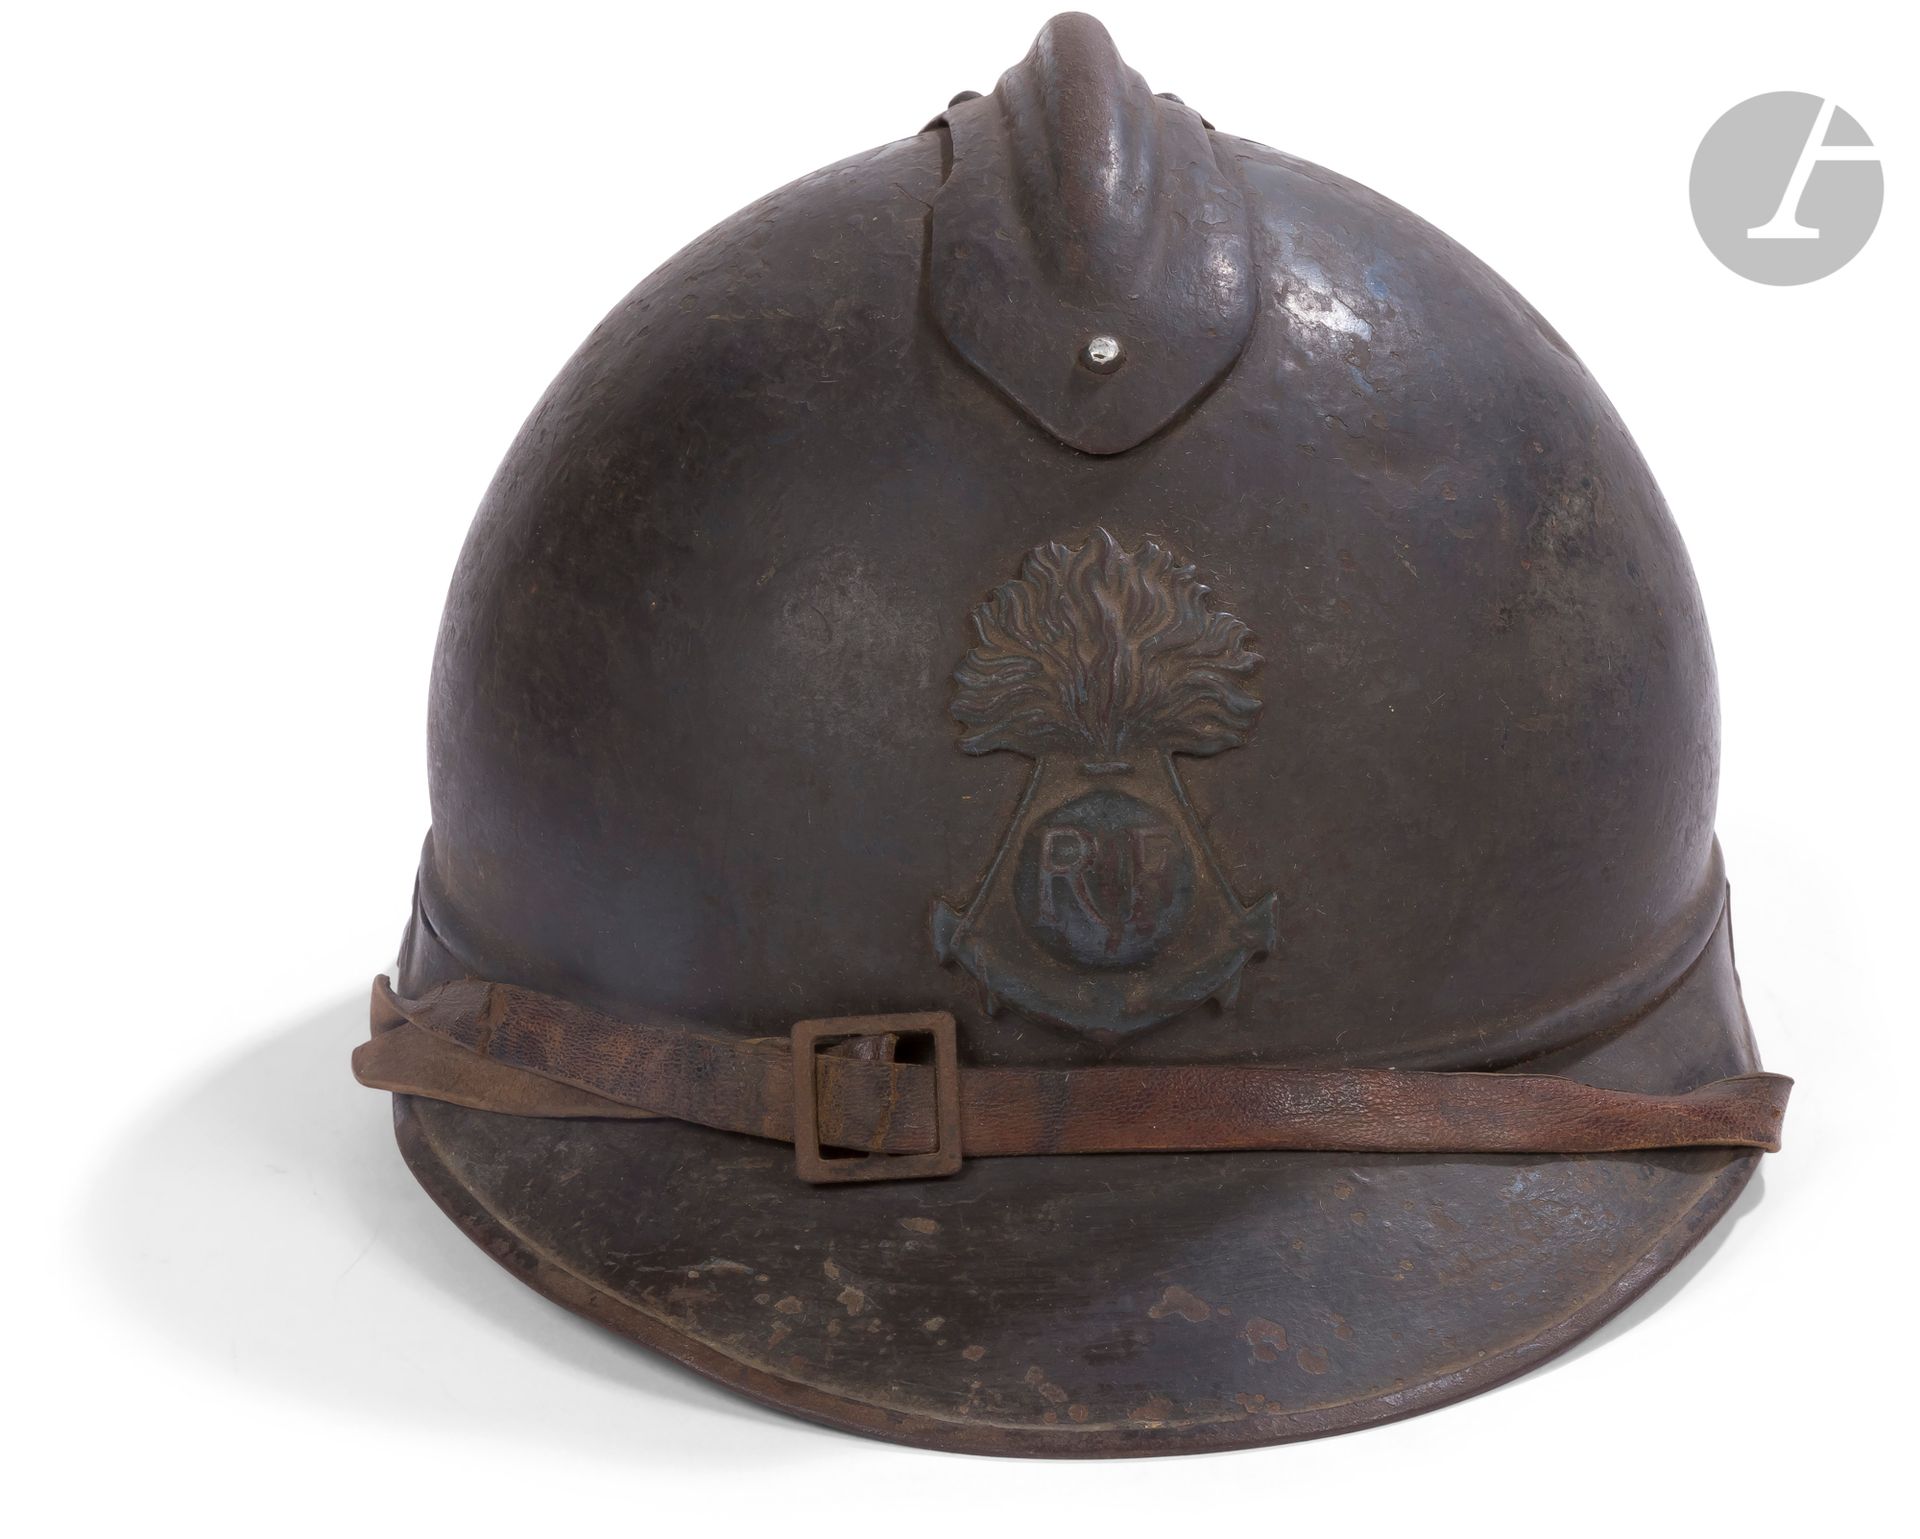 Null Adrian-Helm Modell 1915 der kolonialen Infanterie.
In blauer Farbe lackiert&hellip;